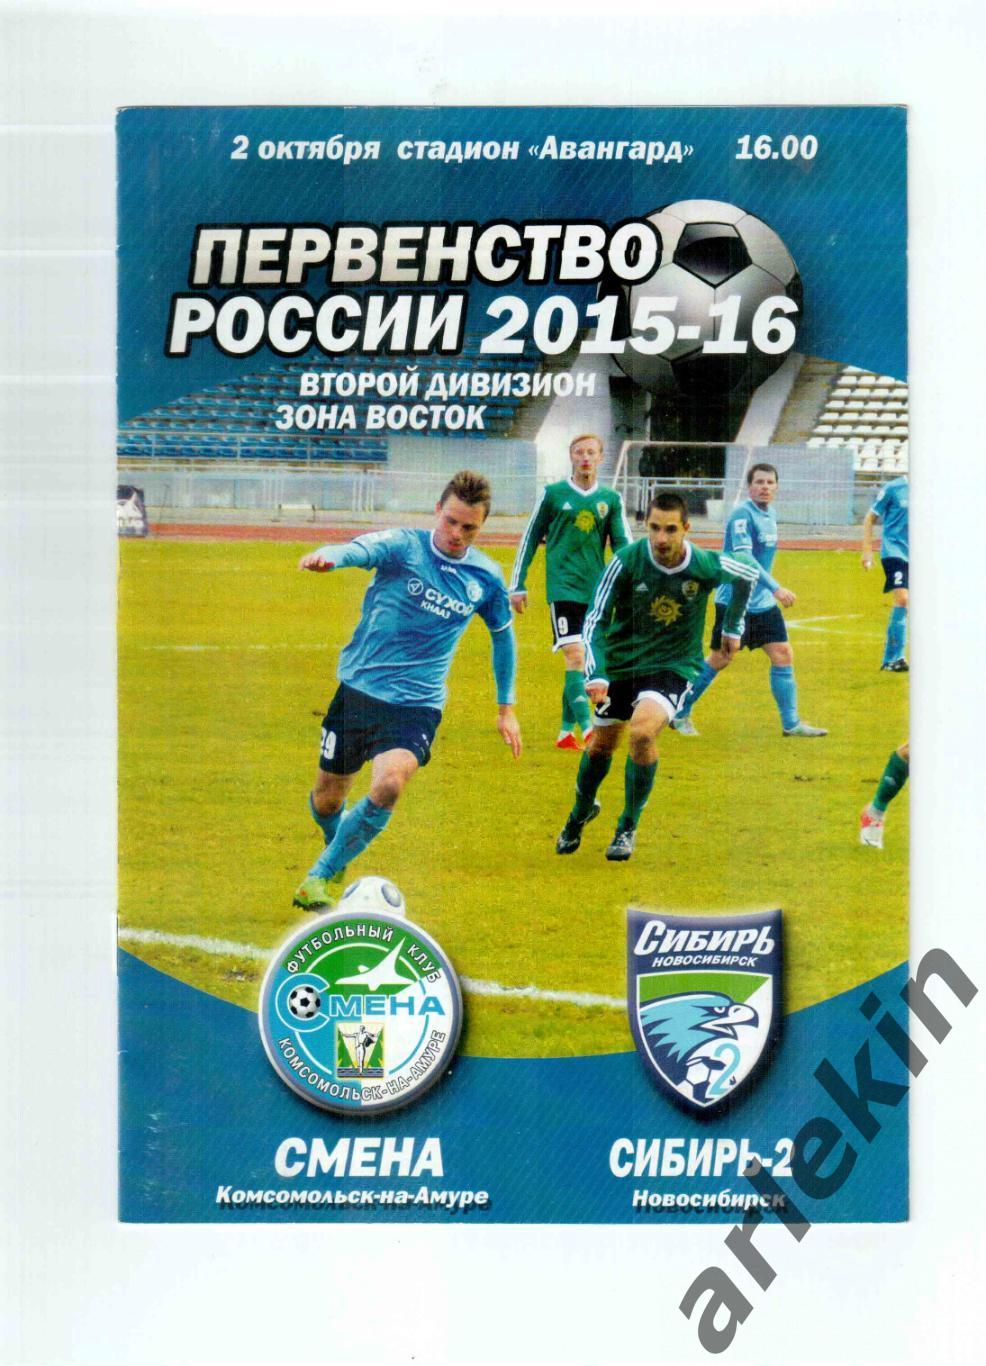 Второй дивизион. Смена Комсомольск-на-Амуре - Сибирь-2 Новосибирск 02.10.2015 г.